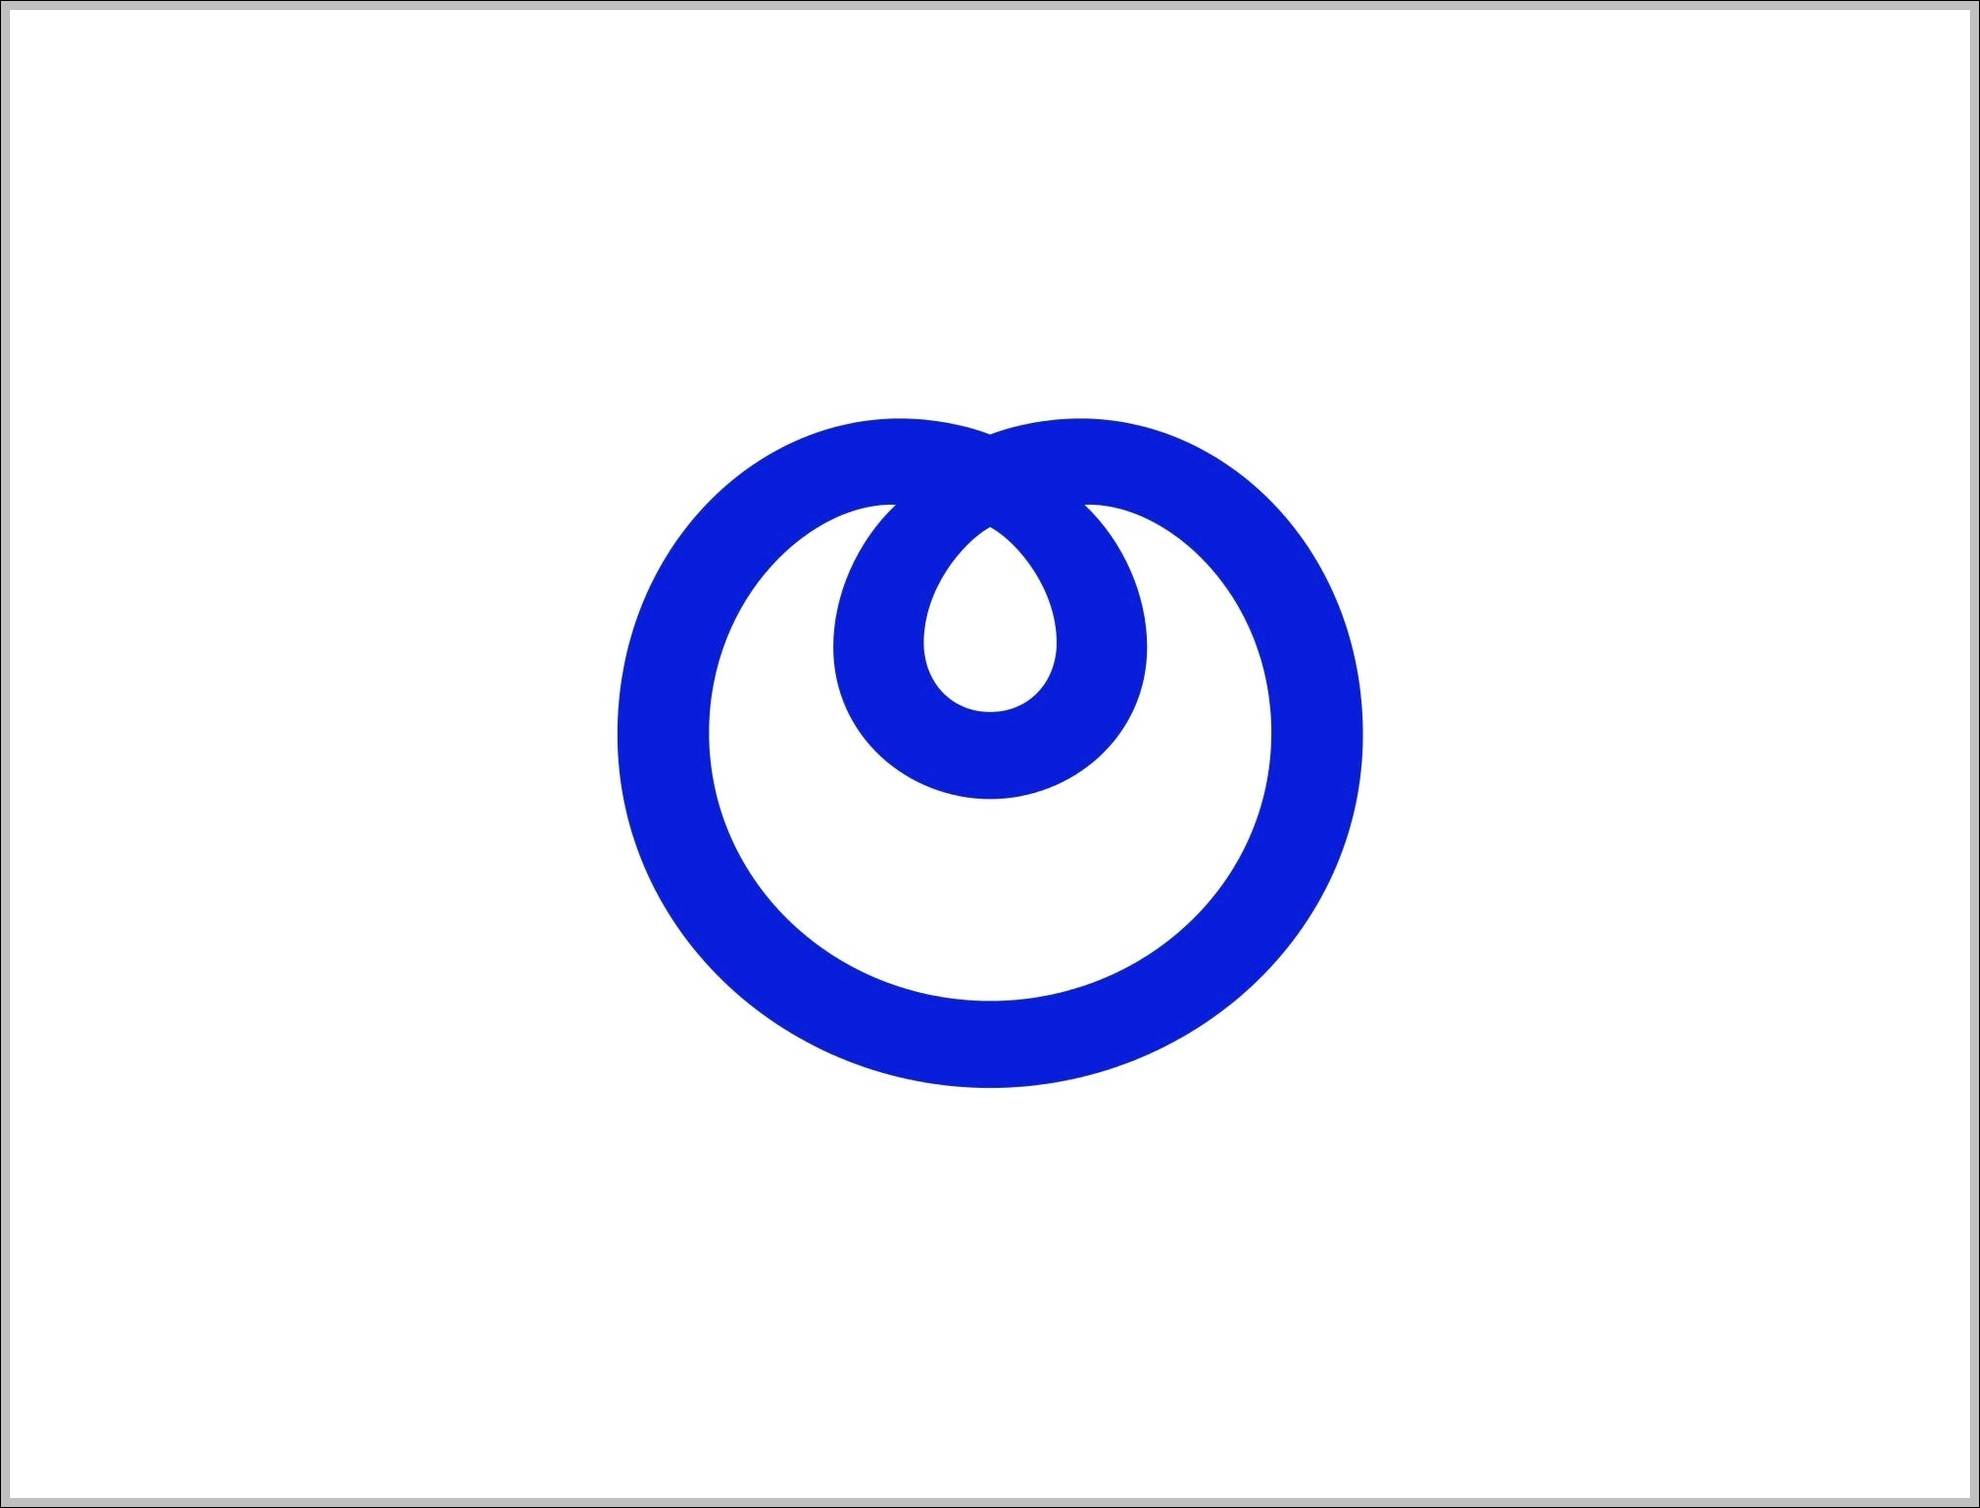 NTT Logo - NTT logo. Logo Sign, Signs, Symbols, Trademarks